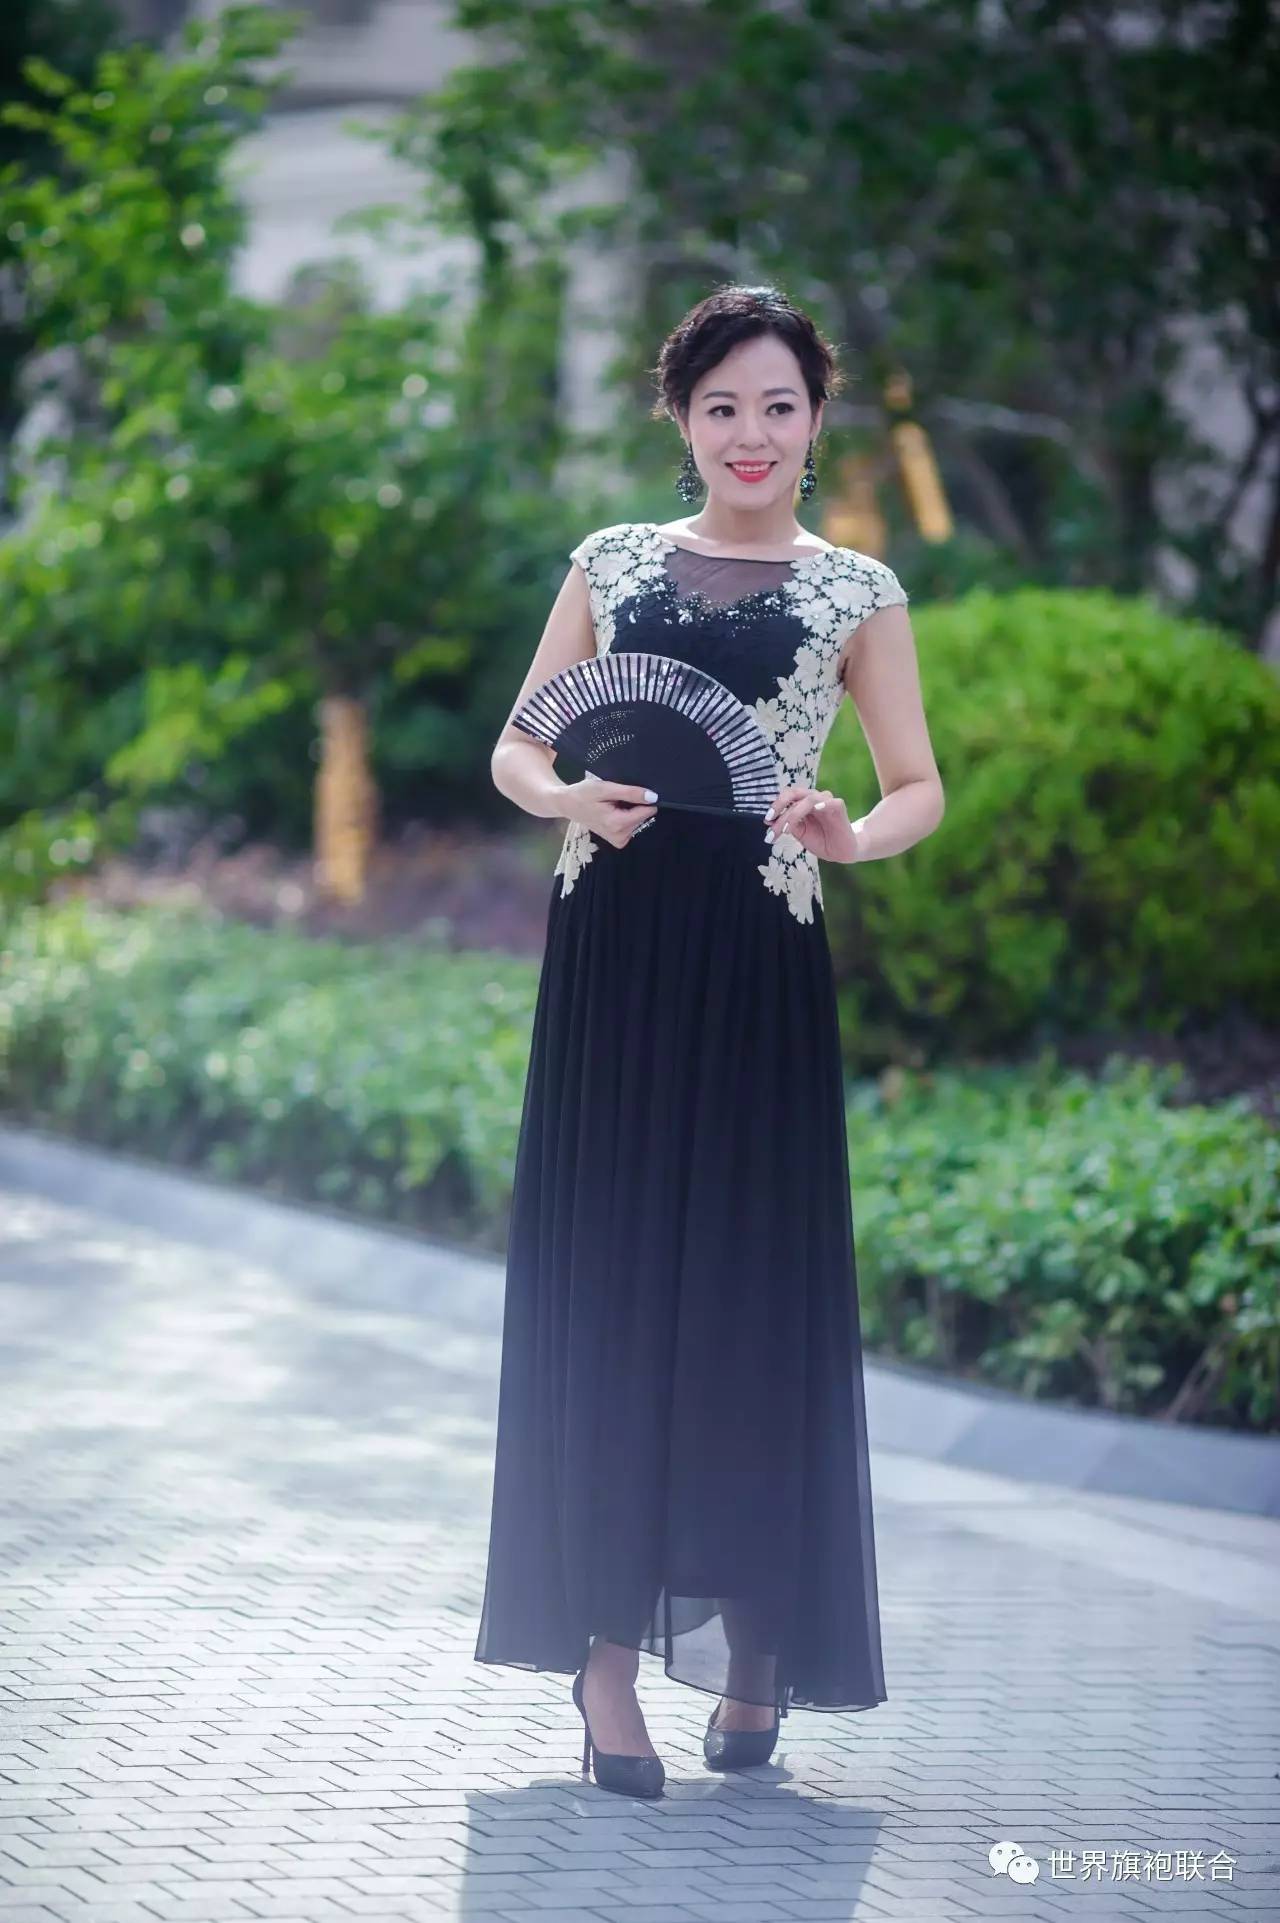 旗袍最适宜东方女性,是中国女人的骄傲.